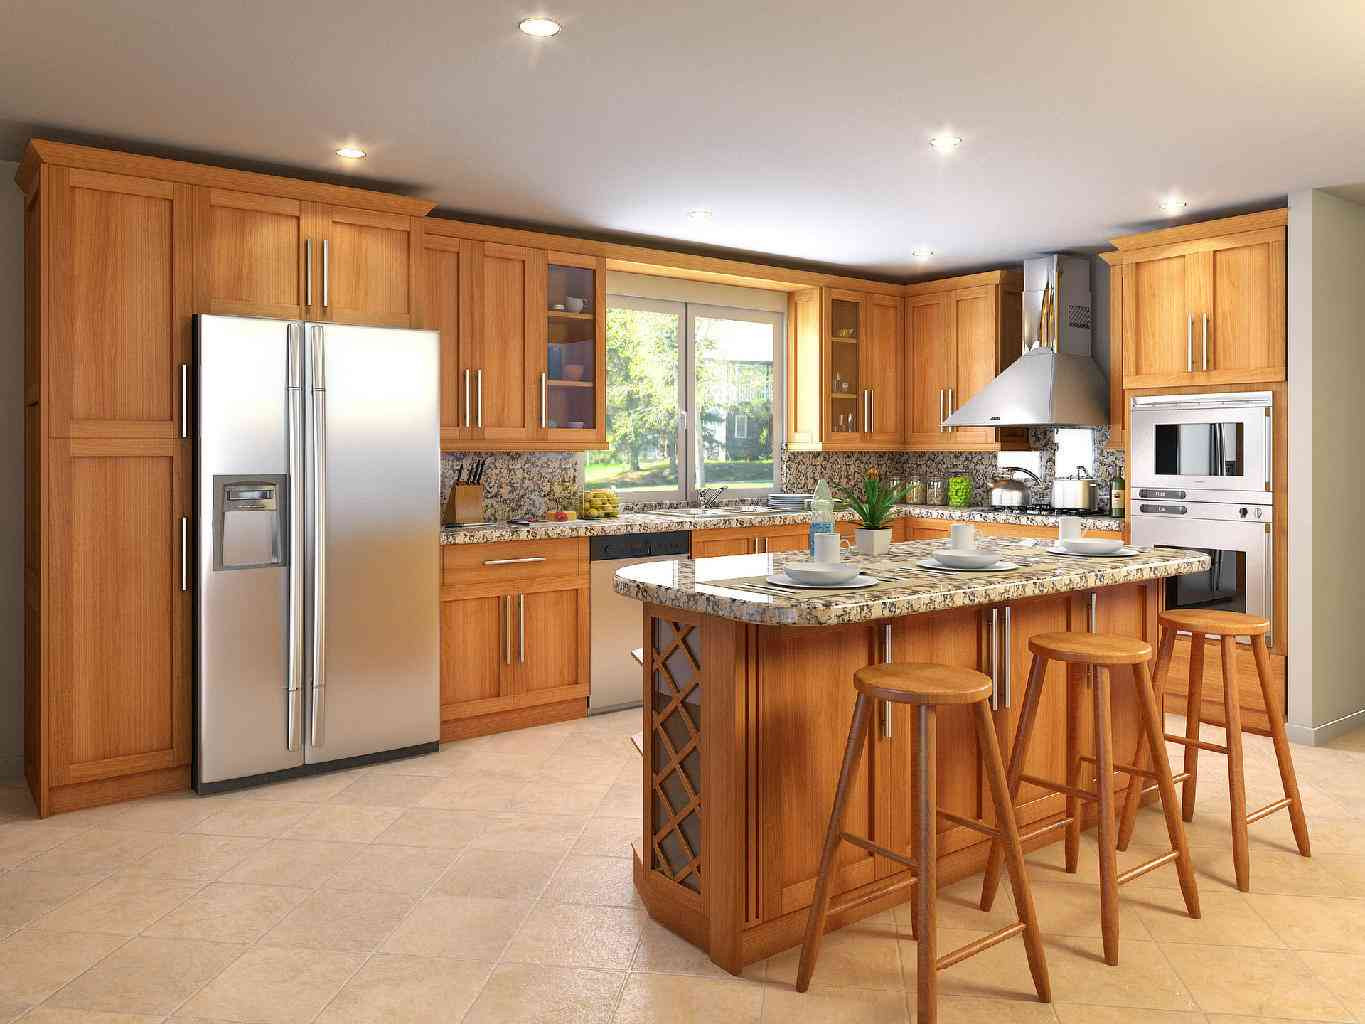 Kitchen Cabinets Design Ideas
 40 Best Kitchen Cabinet Design Ideas